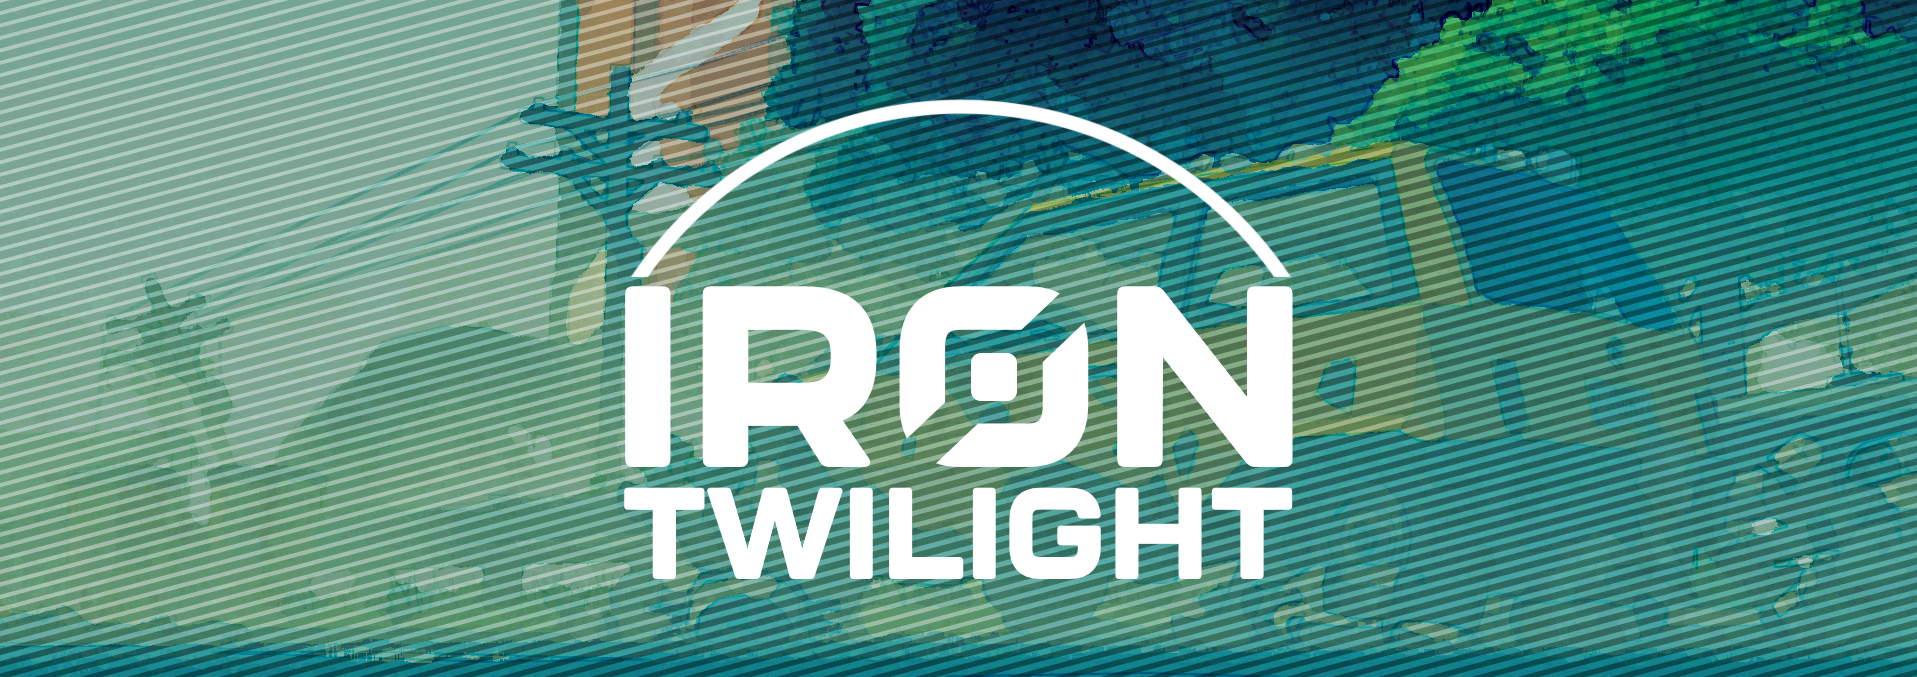 Iron Twilight